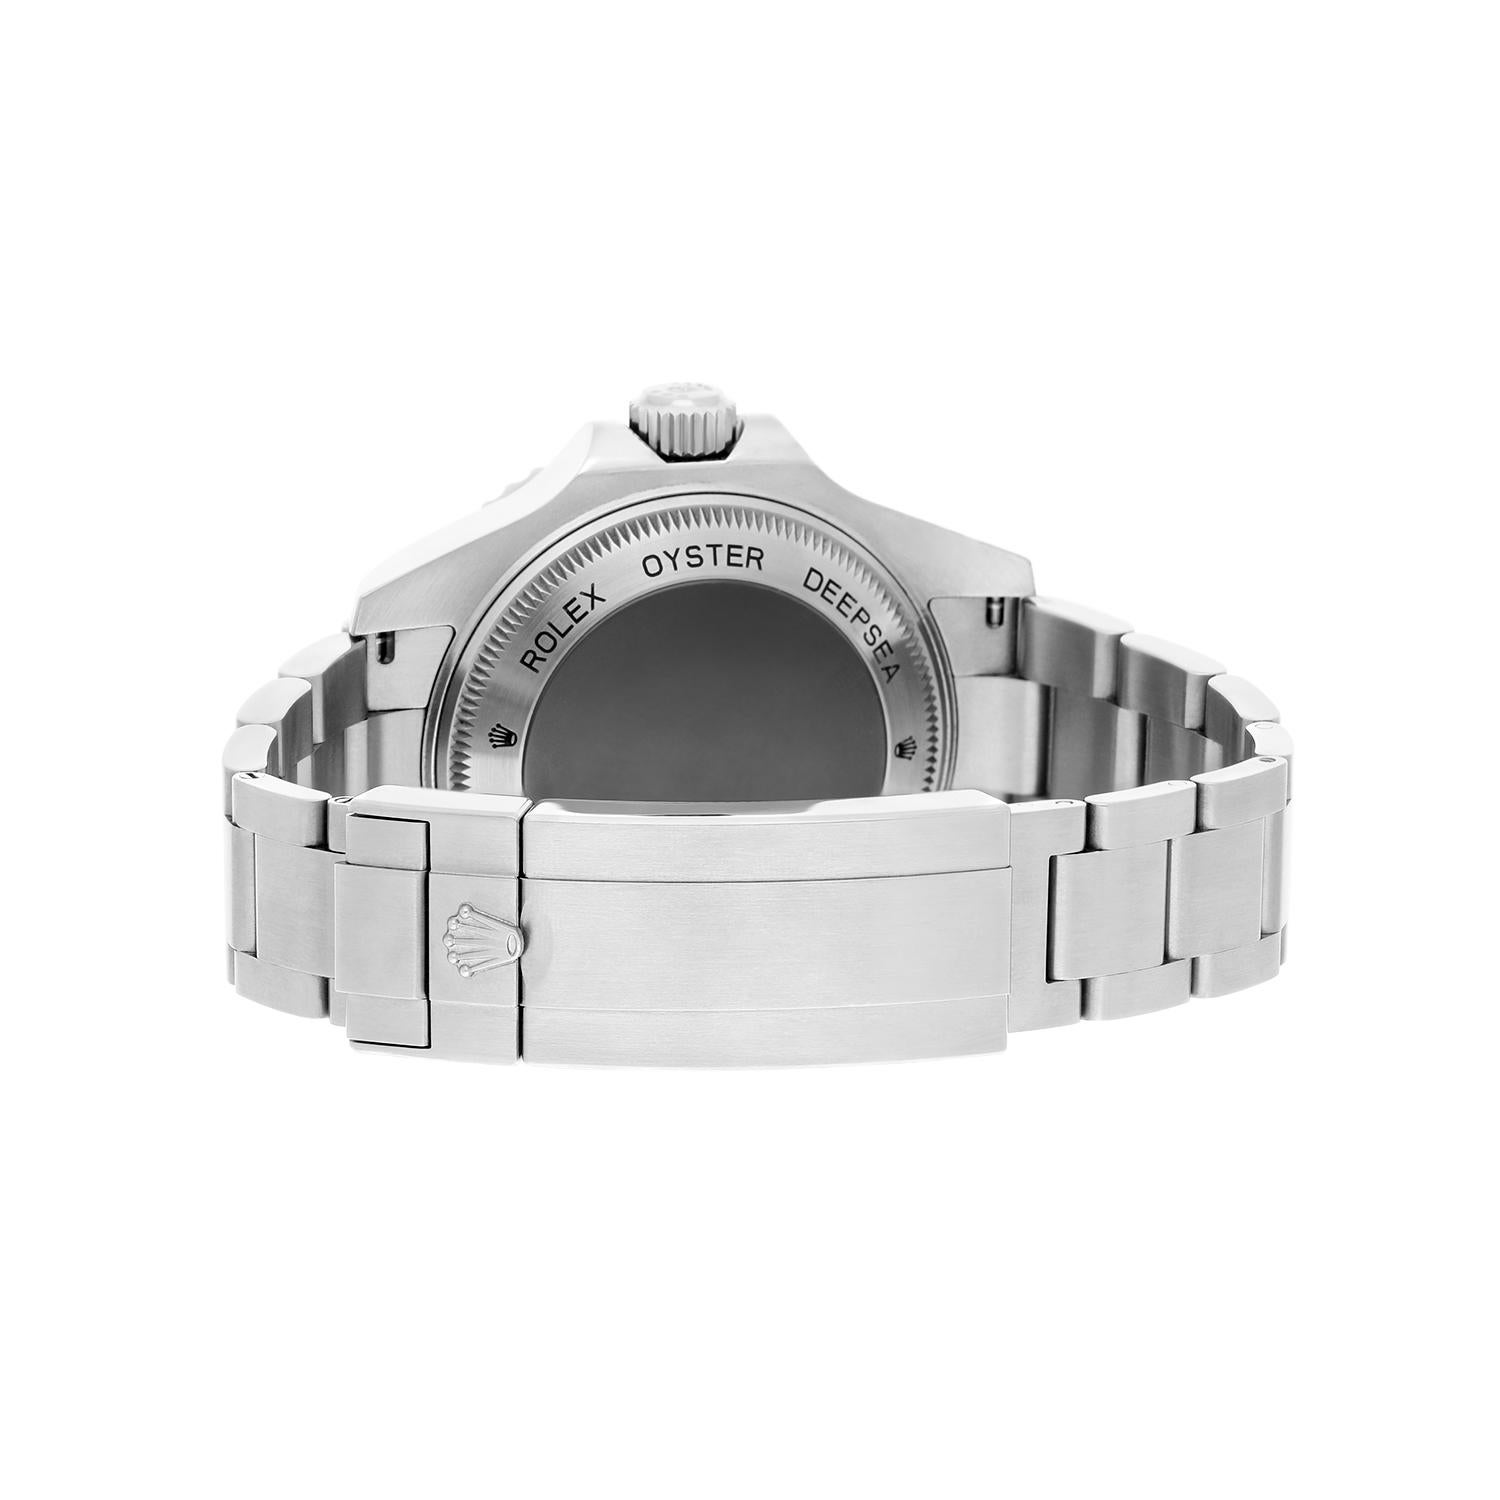 Rolex James Cameron Deepsea Sea-Dweller D-Blue Steel Ceramic Watch 116660 For Sale 1